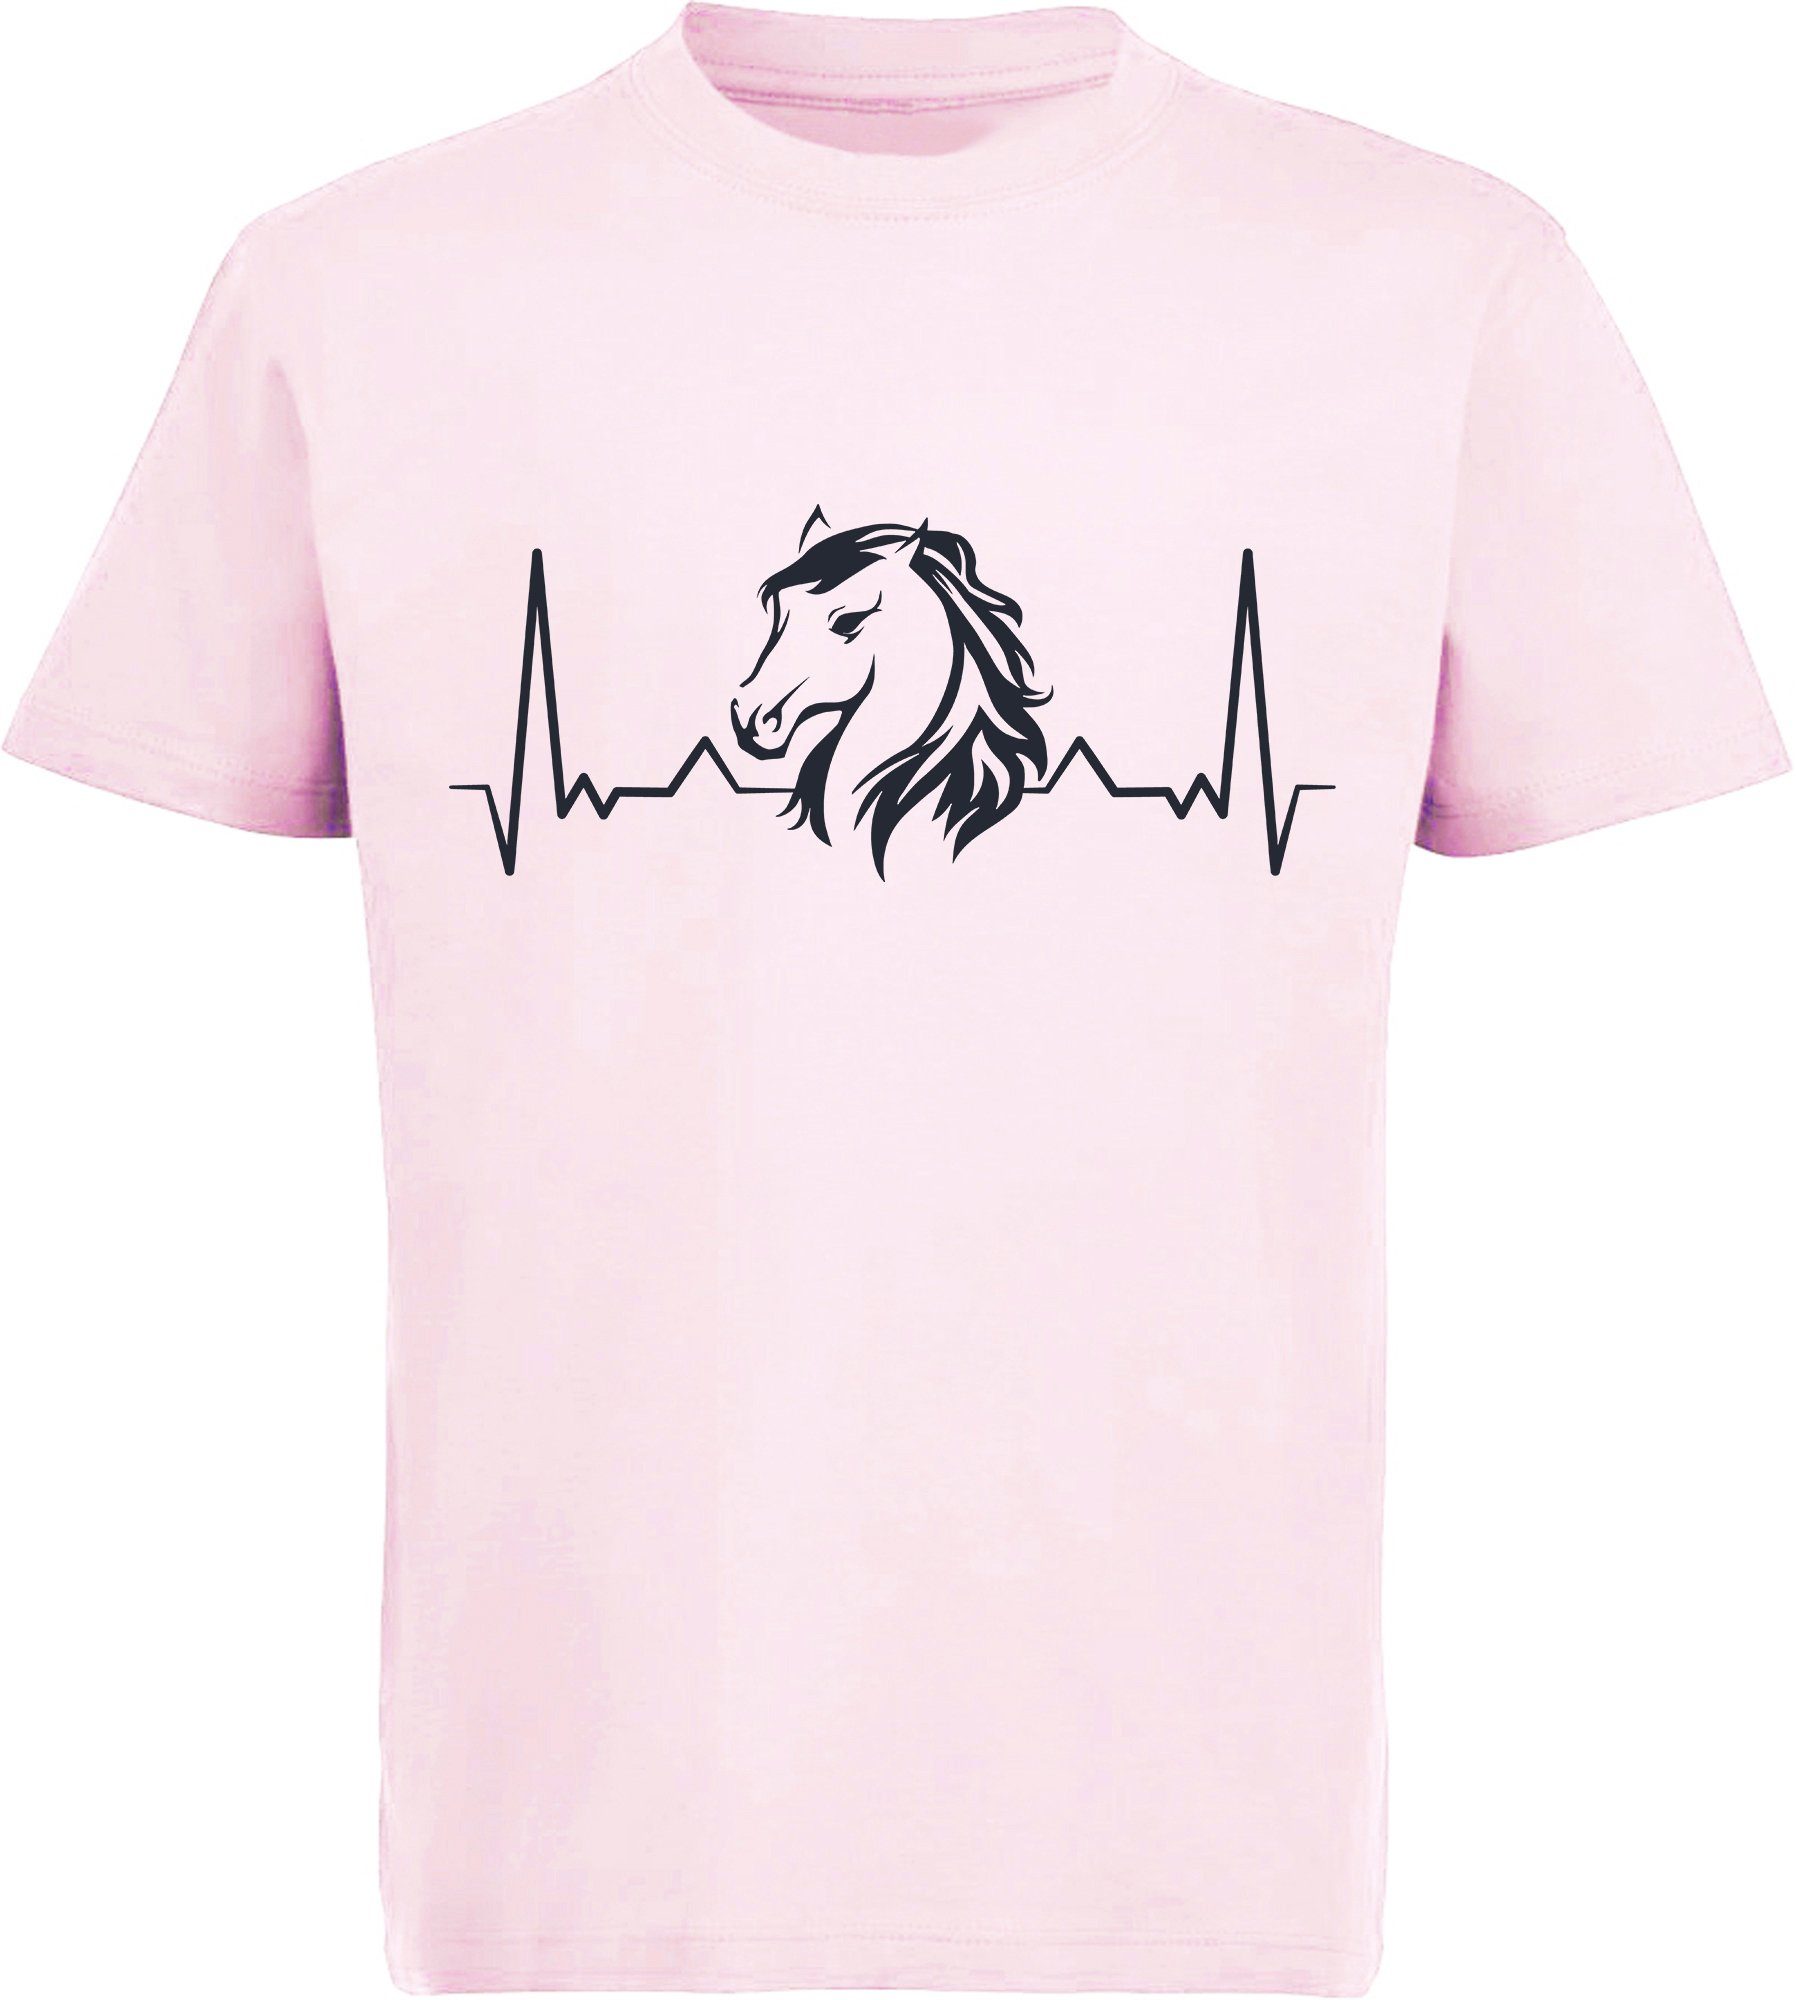 Herzschlaglinie Aufdruck, Pferdekopf mit i143 mit MyDesign24 Print-Shirt rosa T-Shirt bedrucktes Baumwollshirt Mädchen